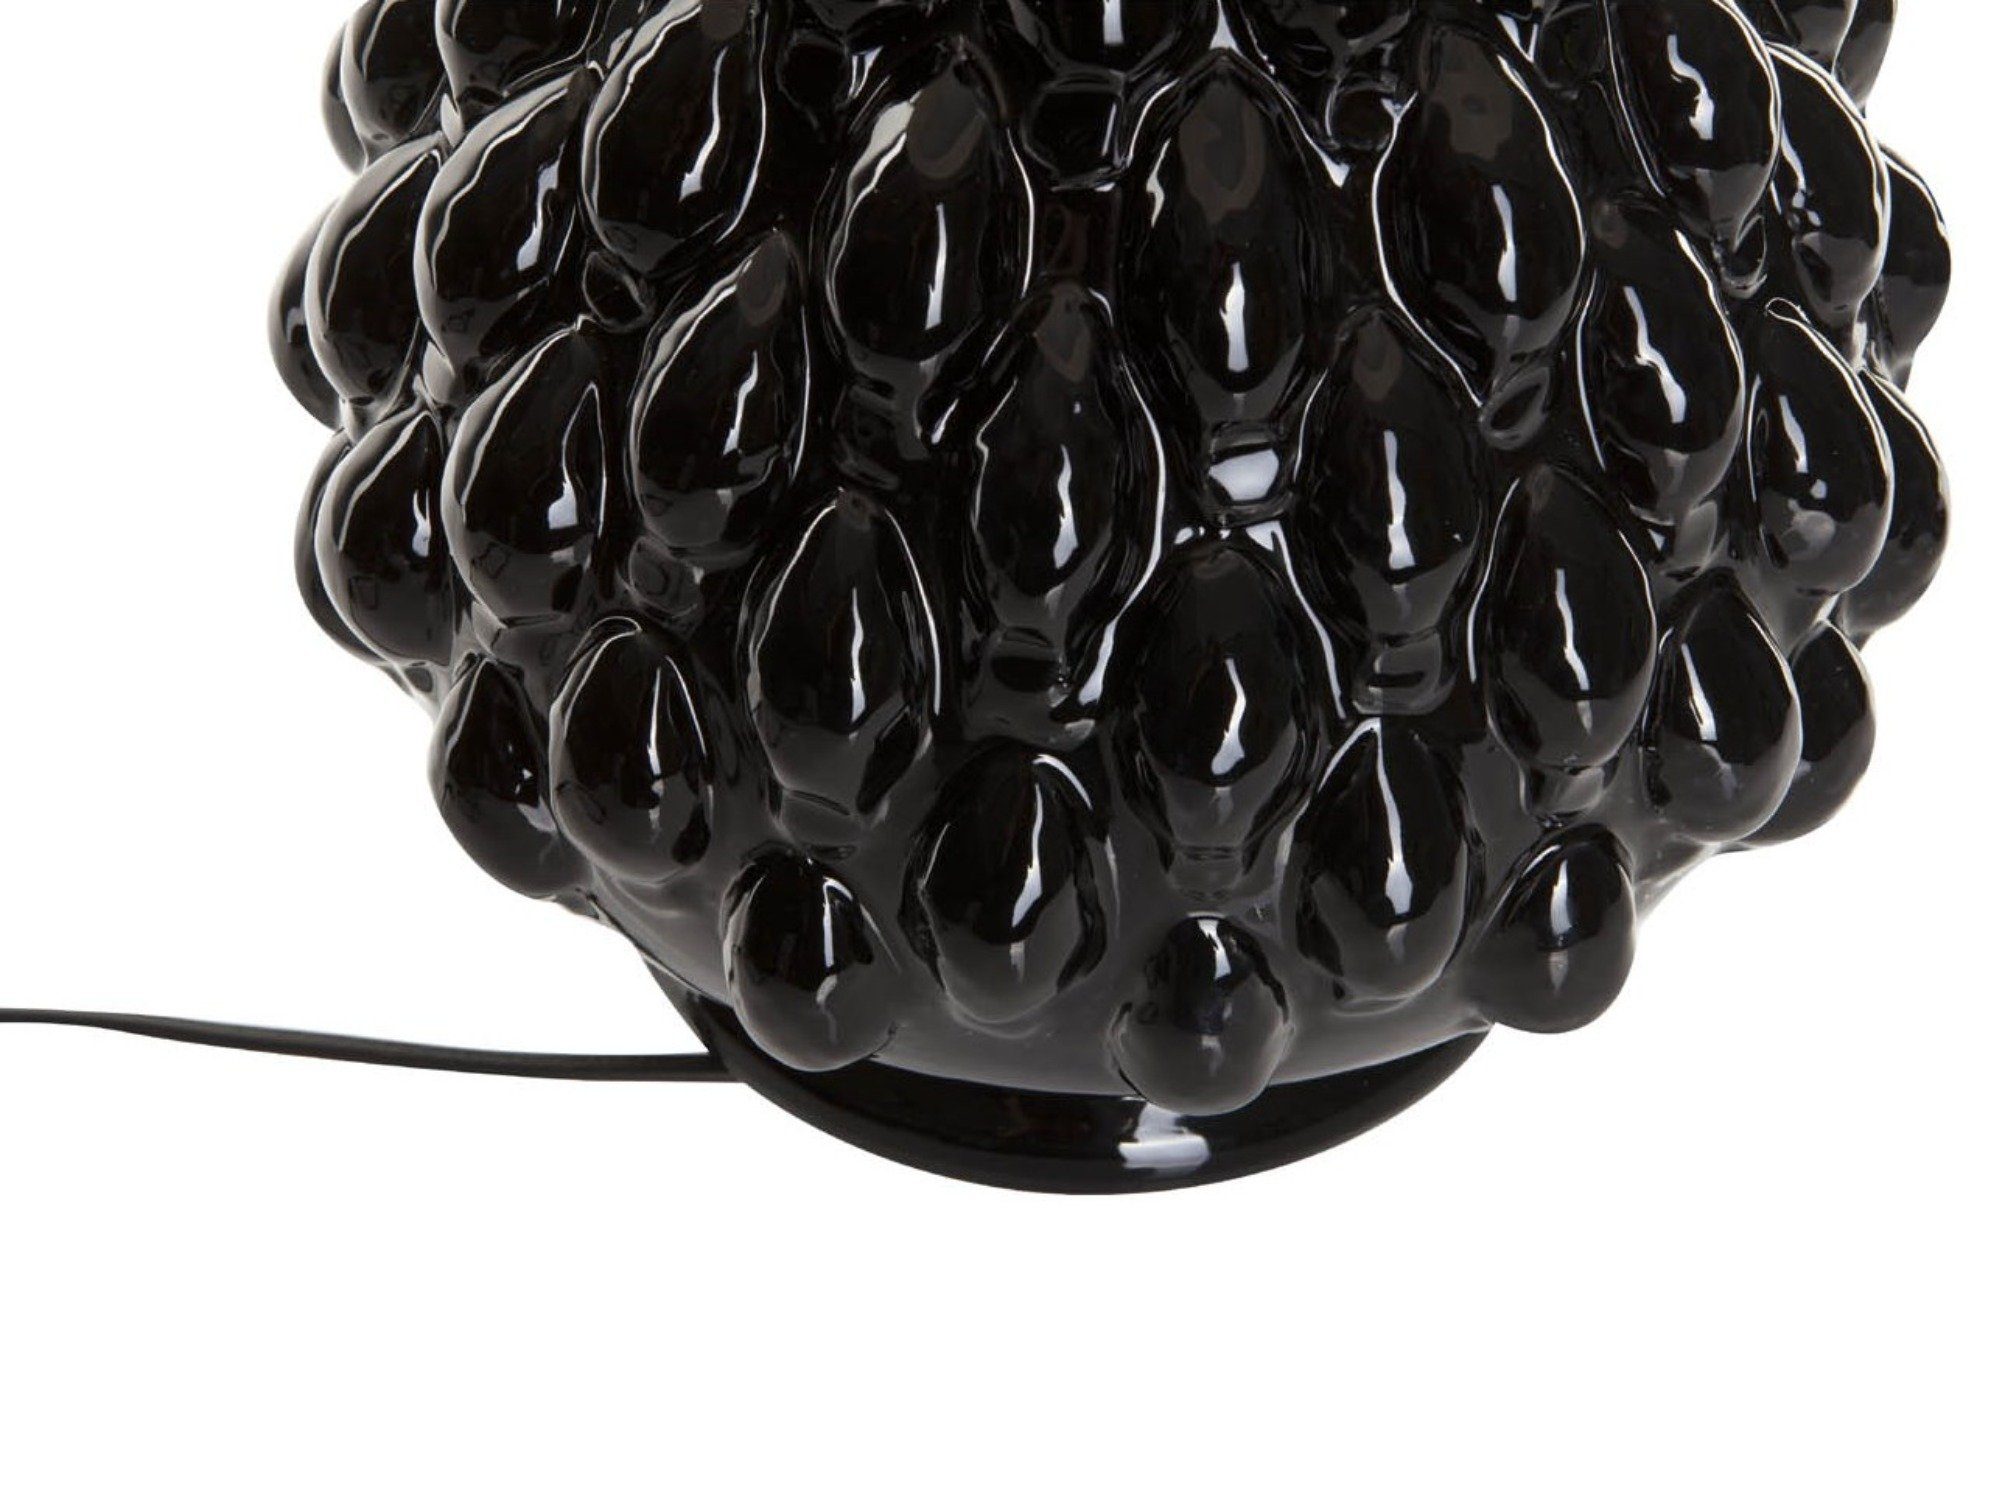 Nachttischlampe handgefertigt Leuchtmittel, Nachttischlampe, mit schwarz Signature Tischlampe ohne warmweiß, Home Keramik Stoffschirm Tischlampe Collection